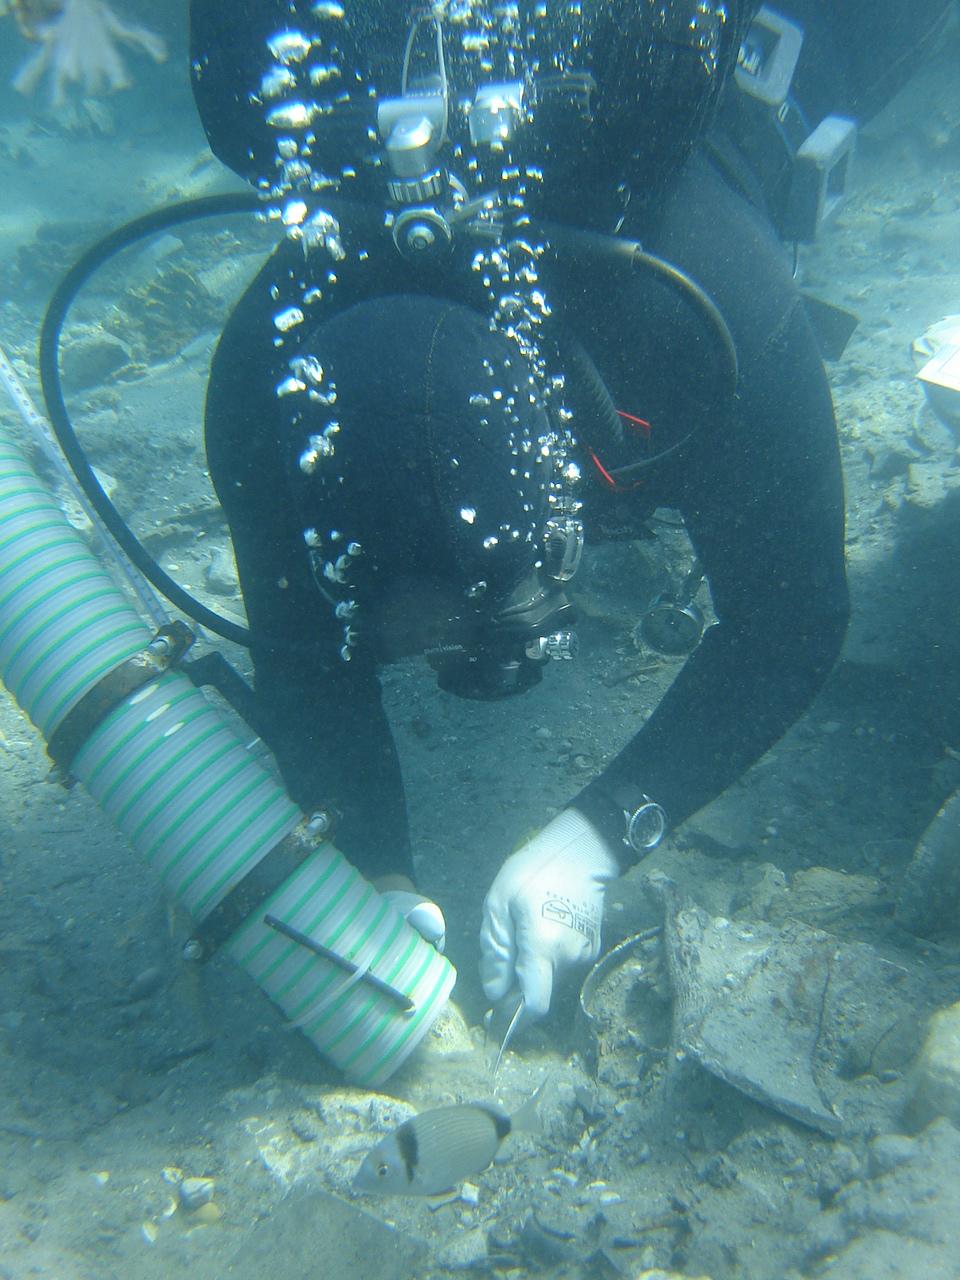 Underwater excavation using water dredges